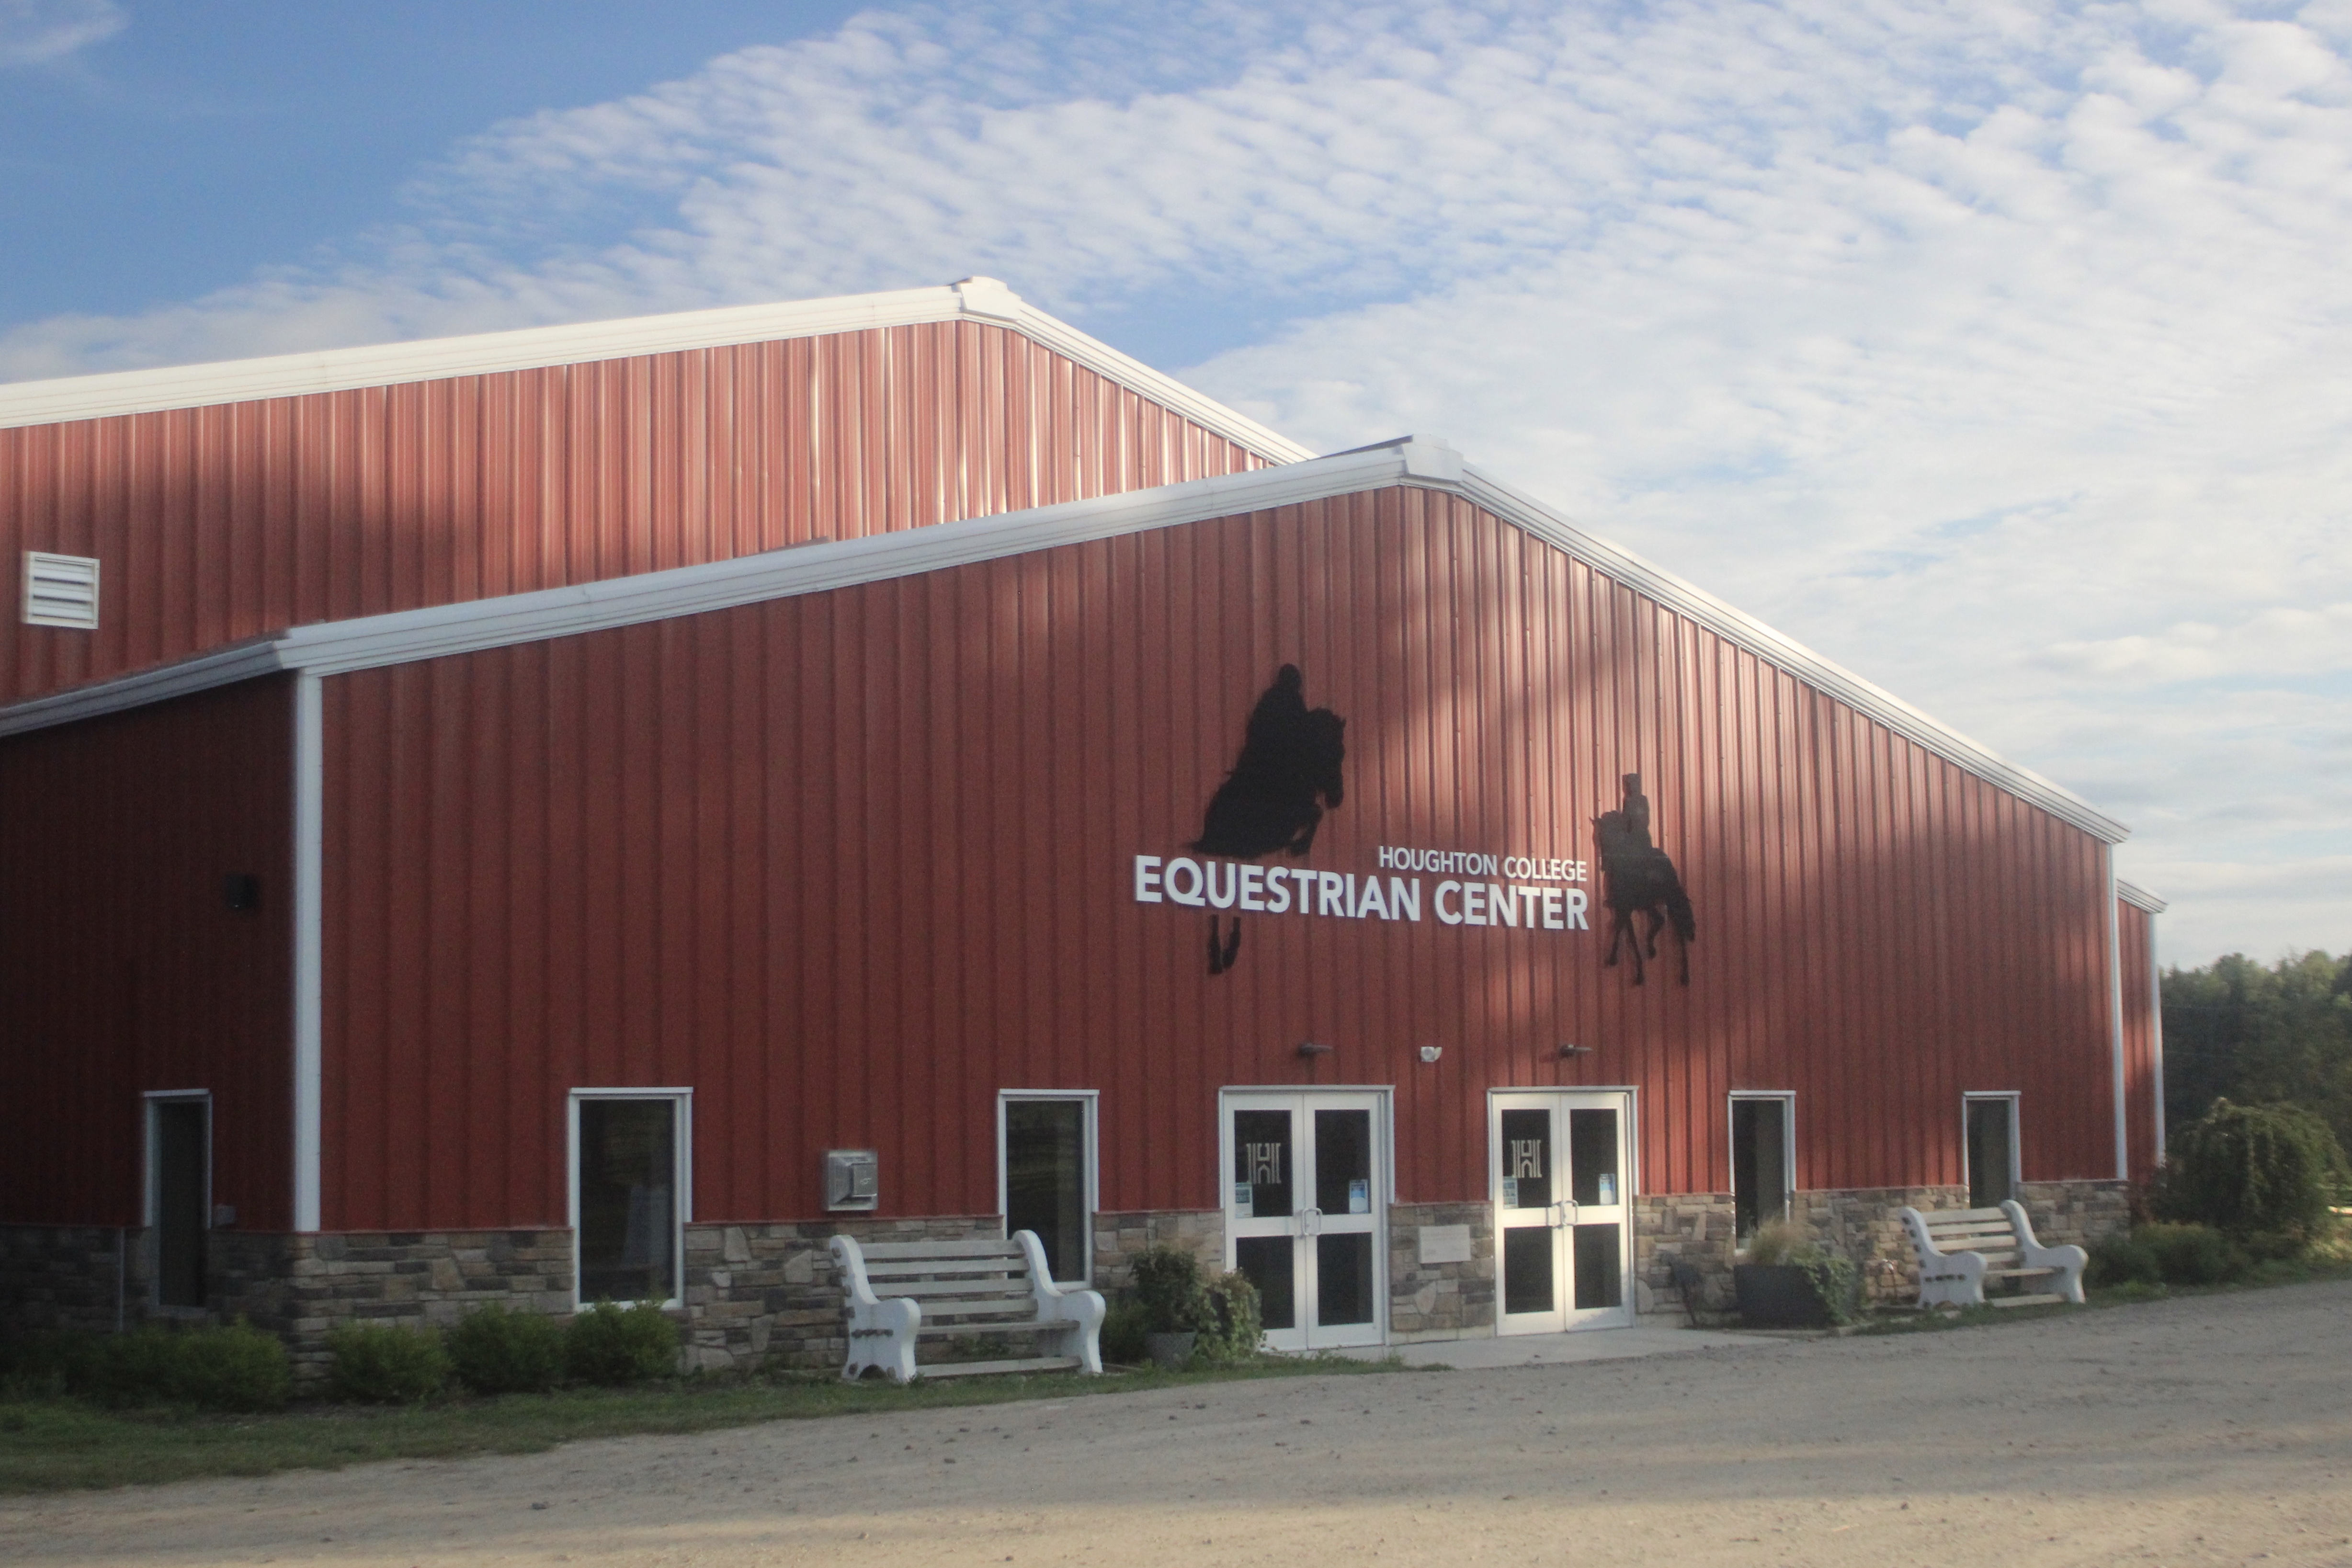 Equestrian event center